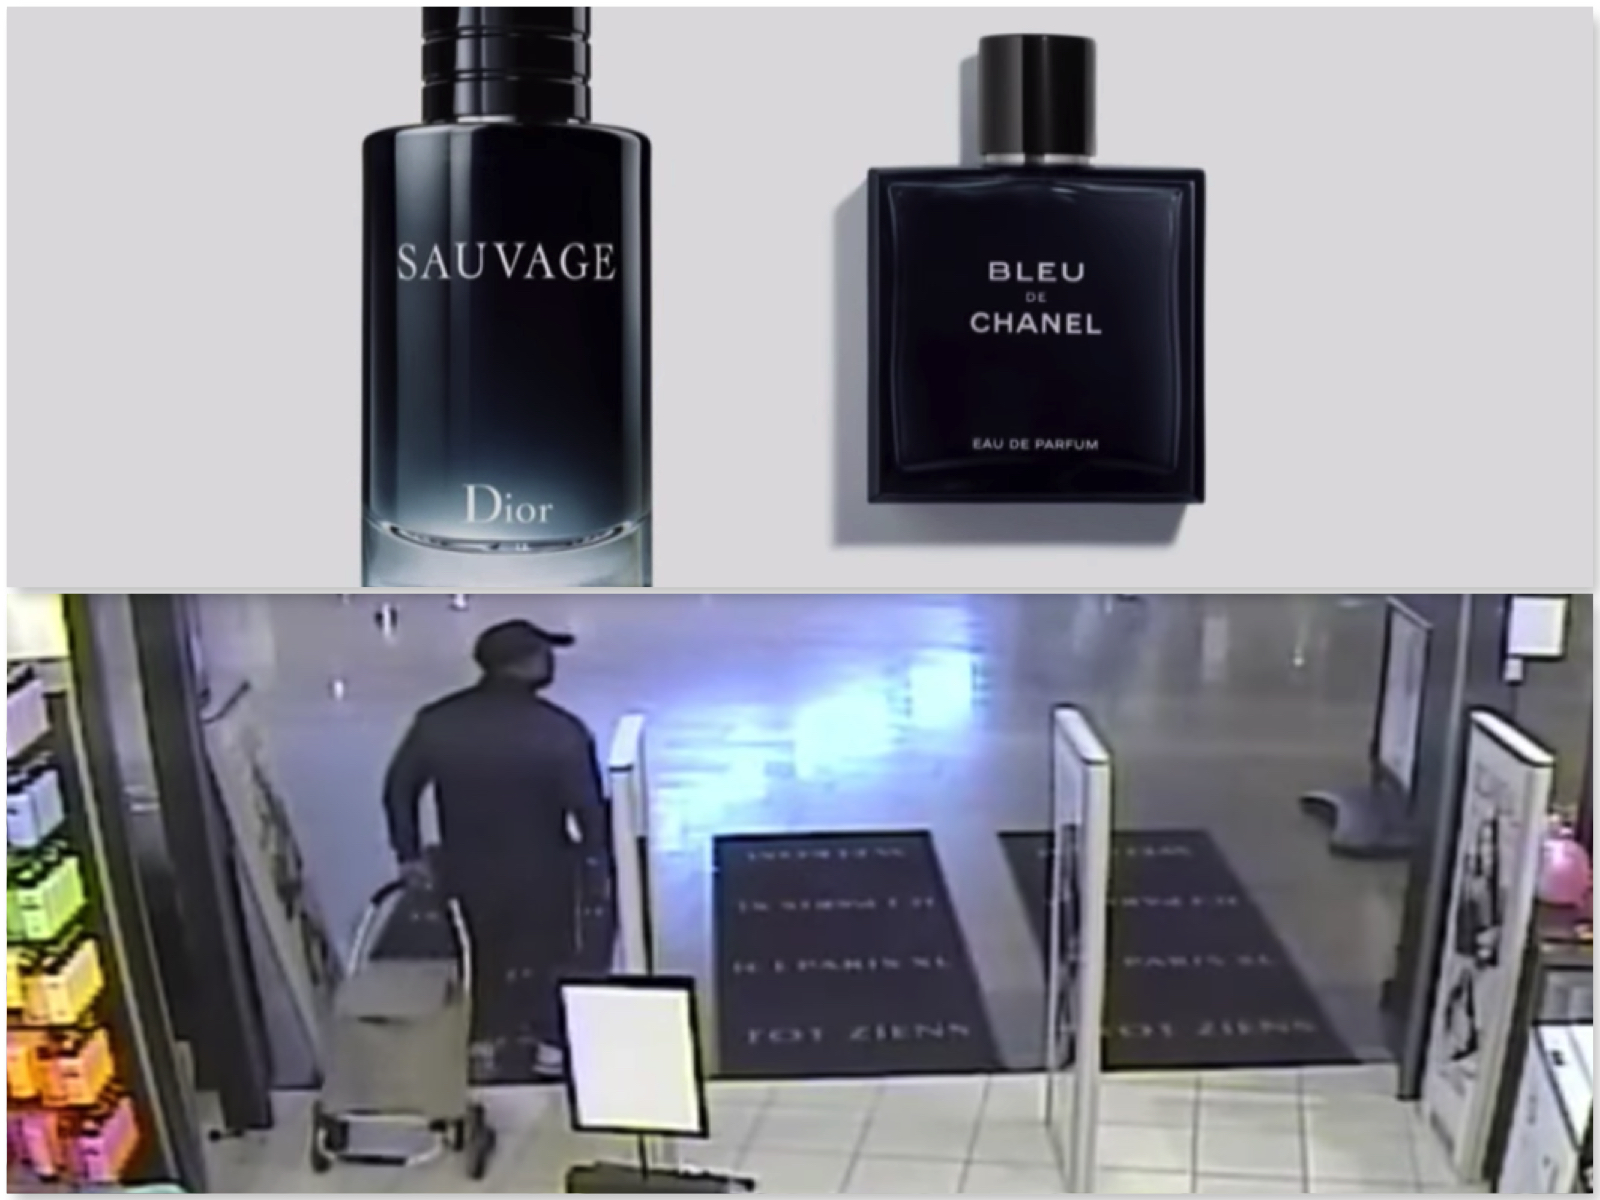 Expertise Modderig Vulgariteit Brutale dief komt vier keer met boodschappentrolley naar Ici Paris XL voor  'gratis' parfum | Crime Nieuws